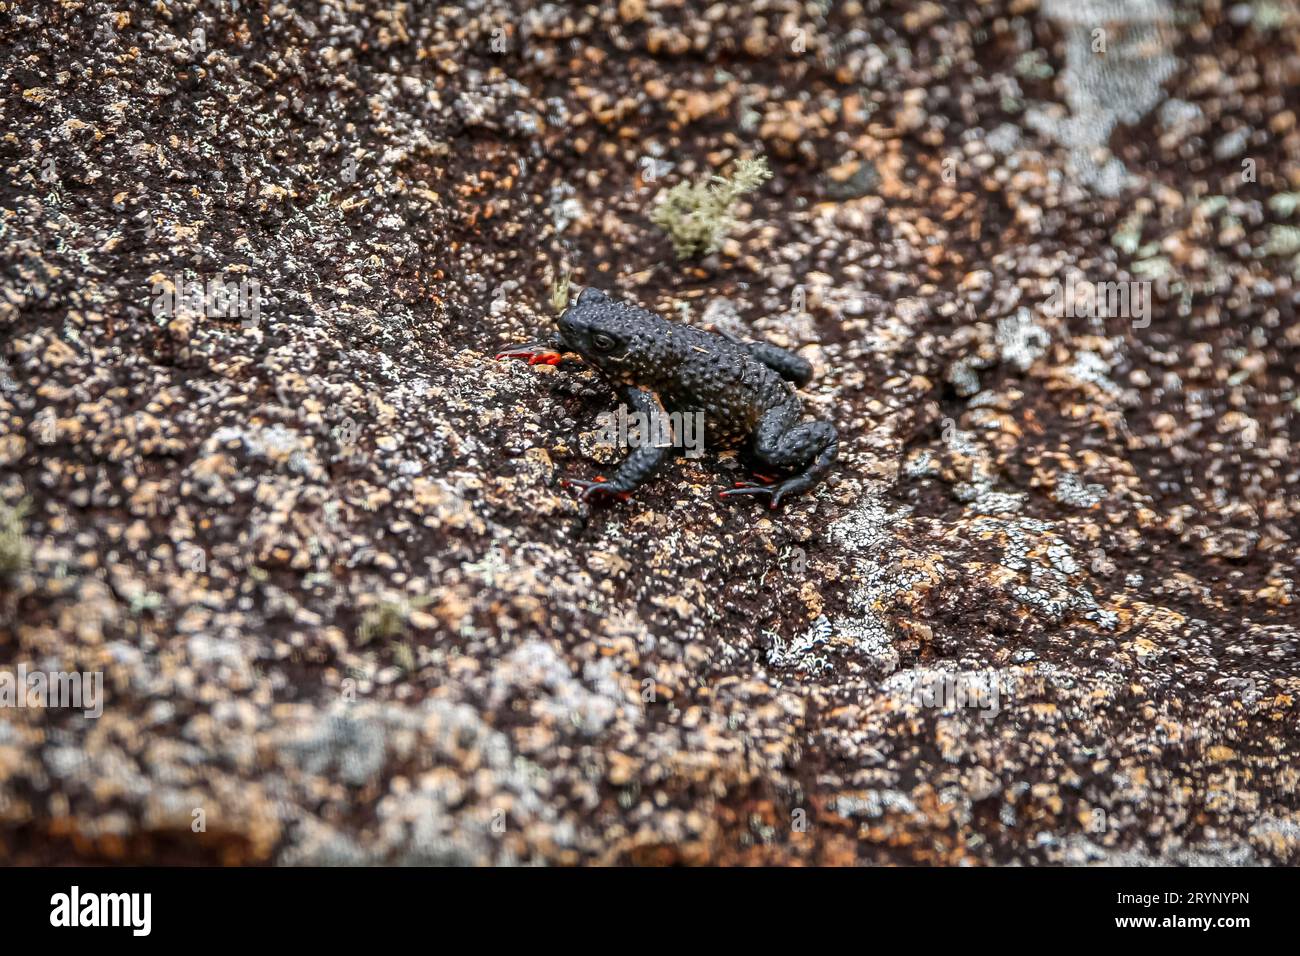 Nahaufnahme einer winzigen Maldonada Redbelly Kröte, einer endemischen brasilianischen Kröte, auf Granitfelsen, Itatiaia, Brasilien Stockfoto